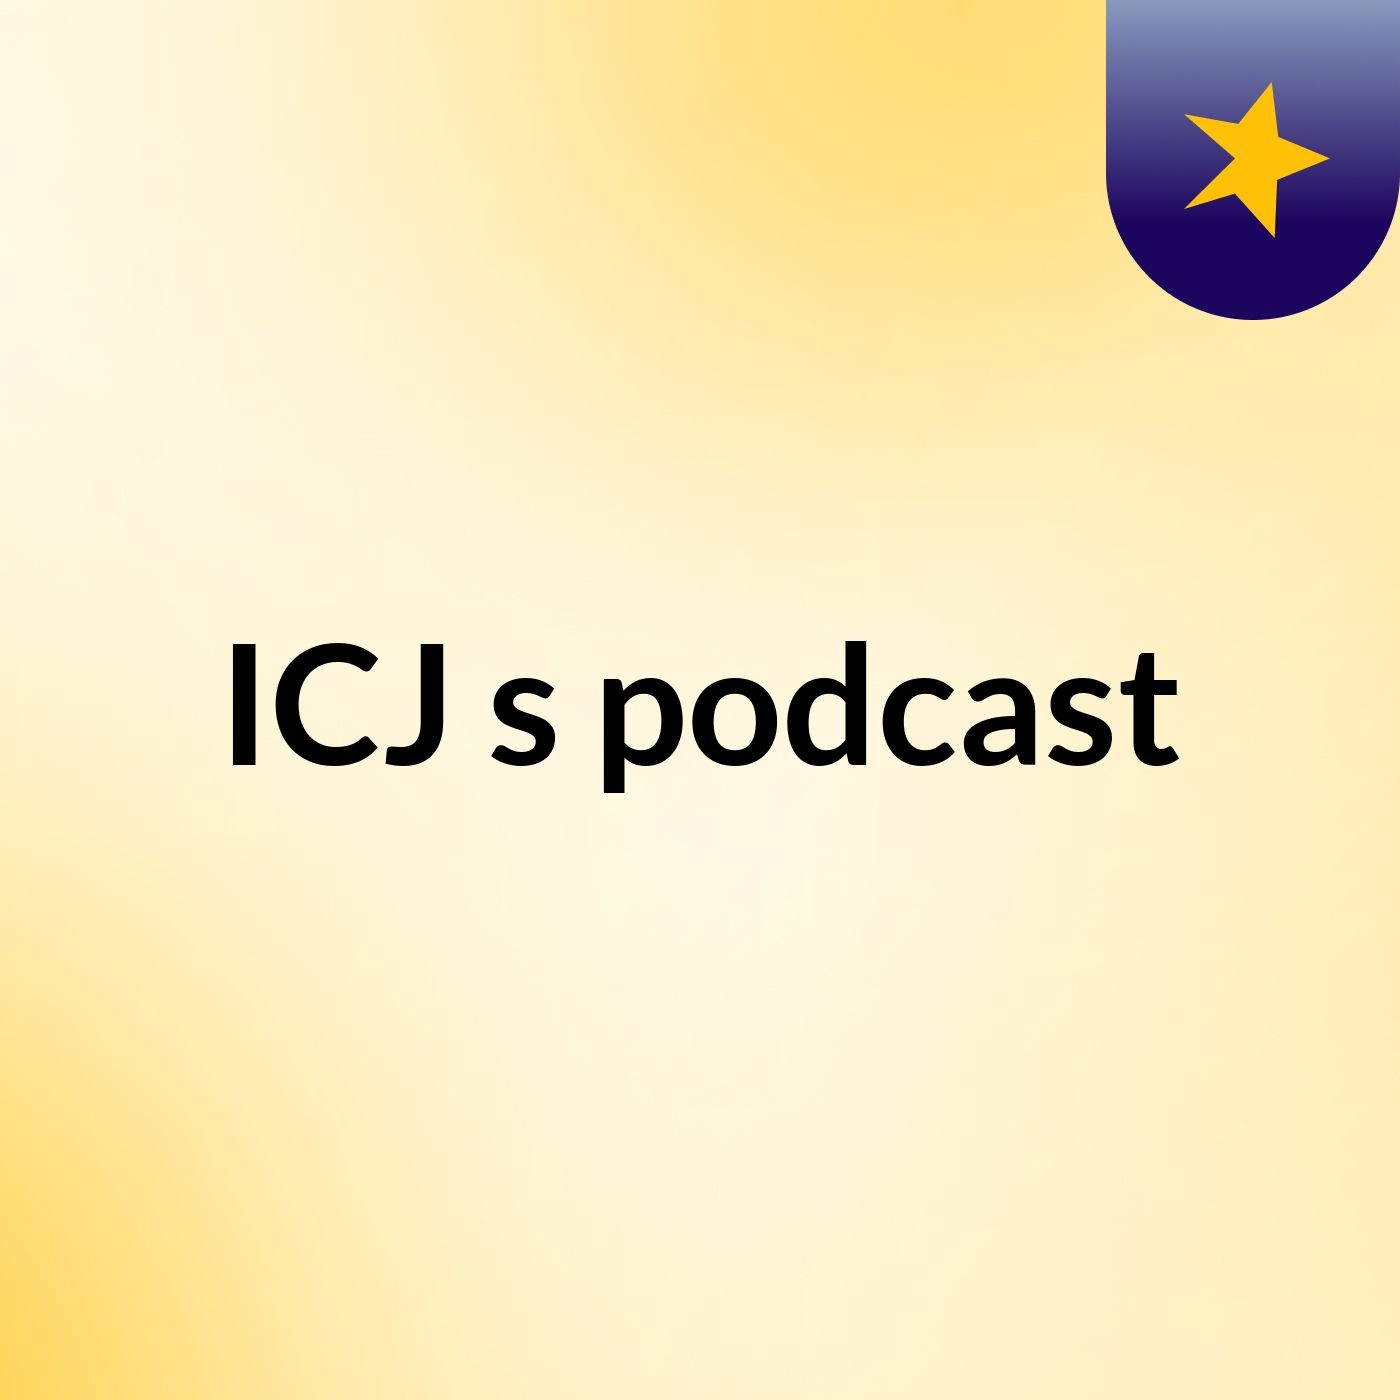 Episode 3 - ICJ's podcast